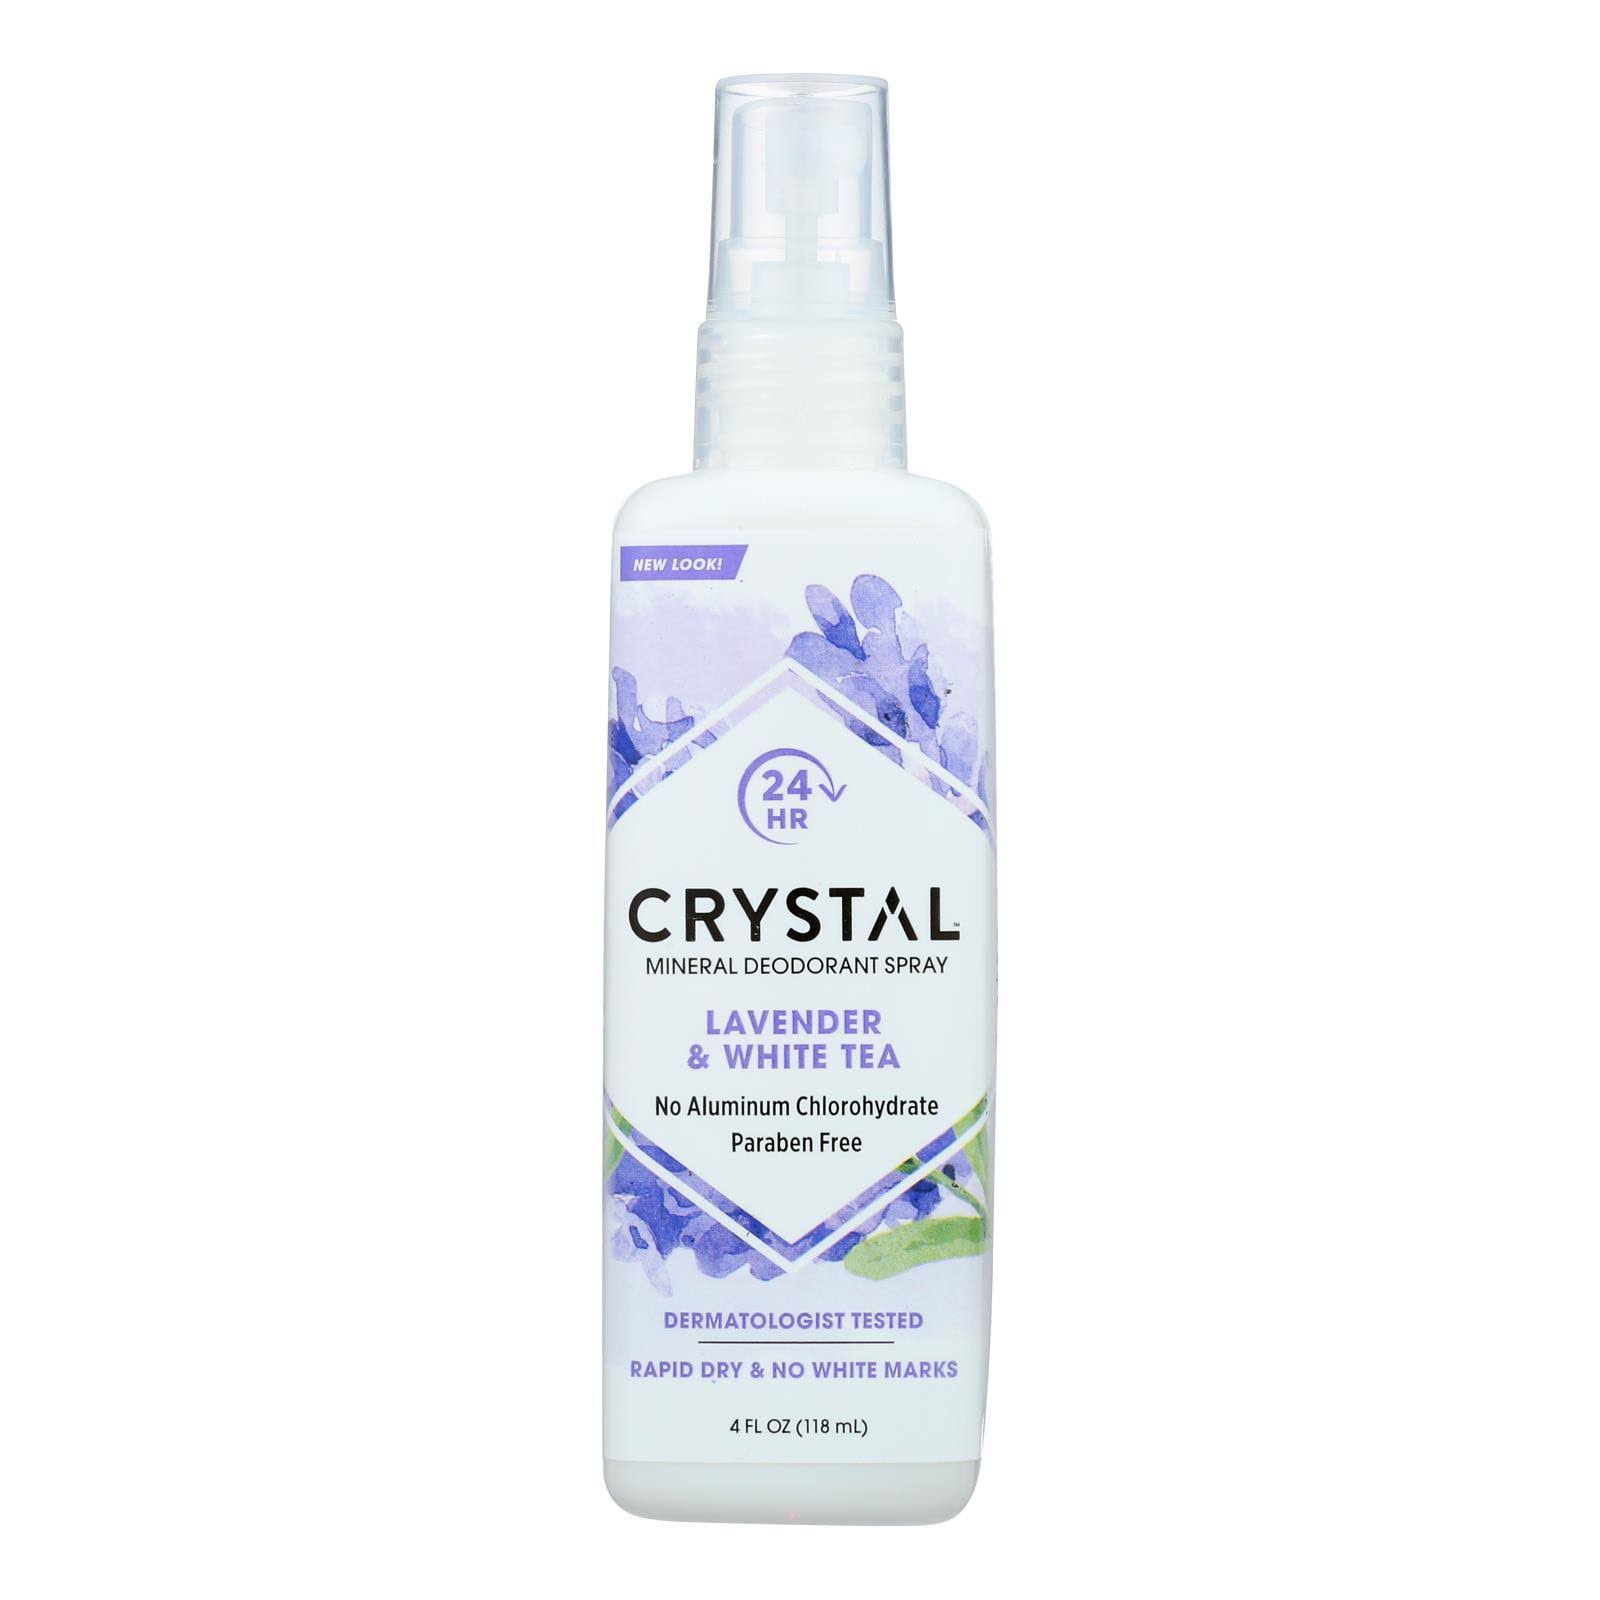 Crystal Essence Mineral Deodorant Body Spray - Lavender & White Tea, 4oz